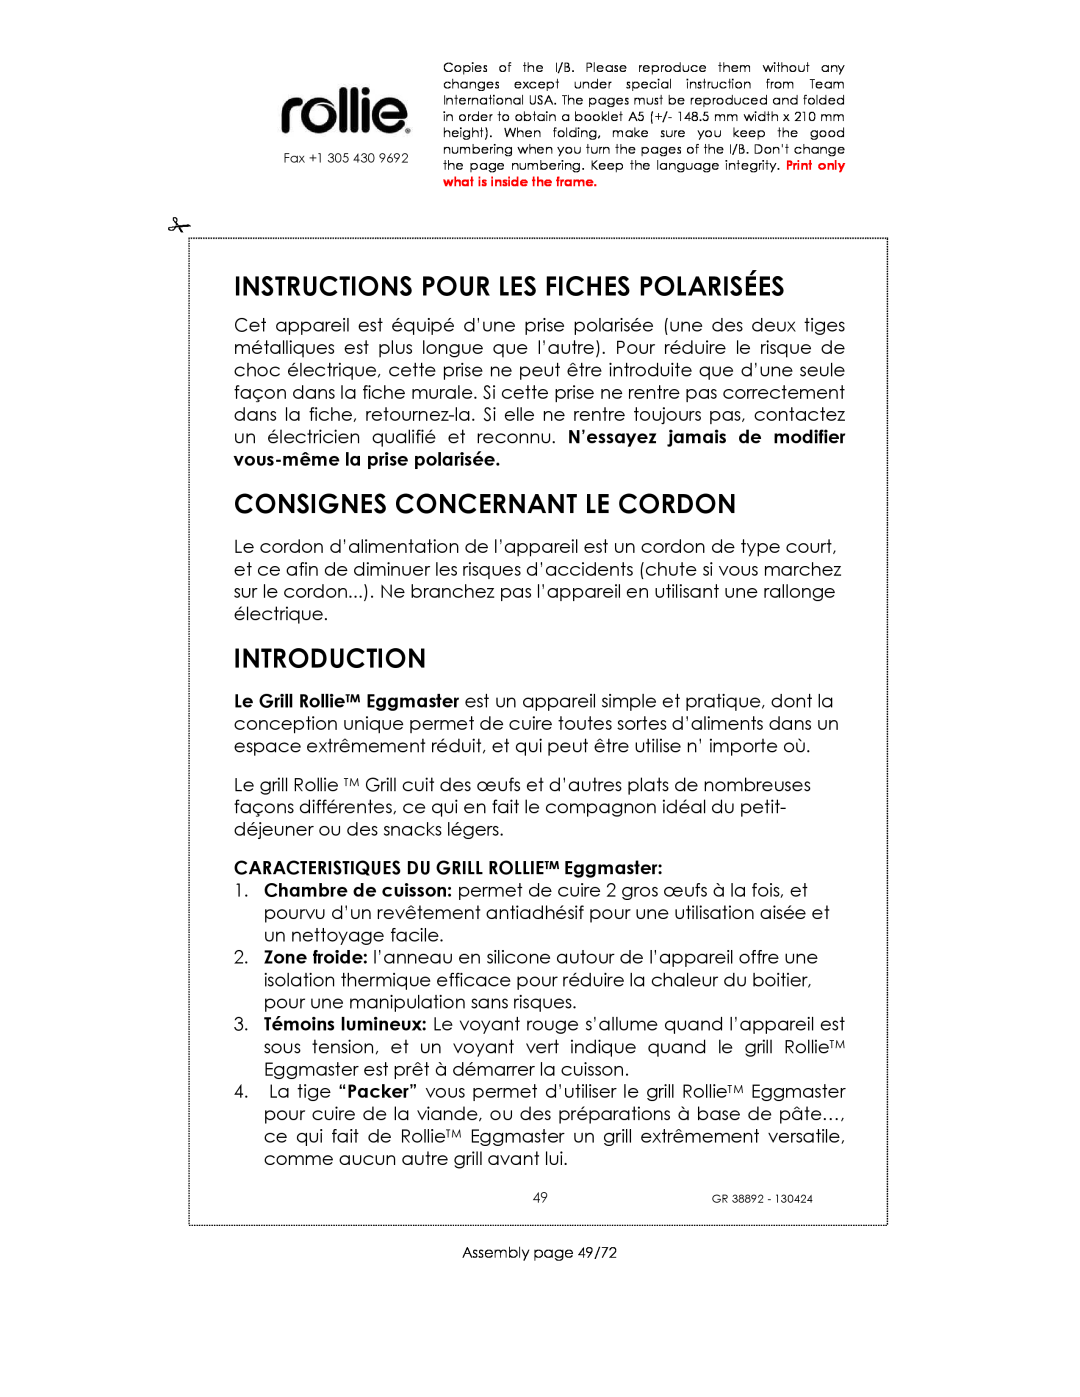 Kalorik GR38892 manual Instructions Pour Les Fiches Polarisées, Consignes Concernant Le Cordon, Introduction 